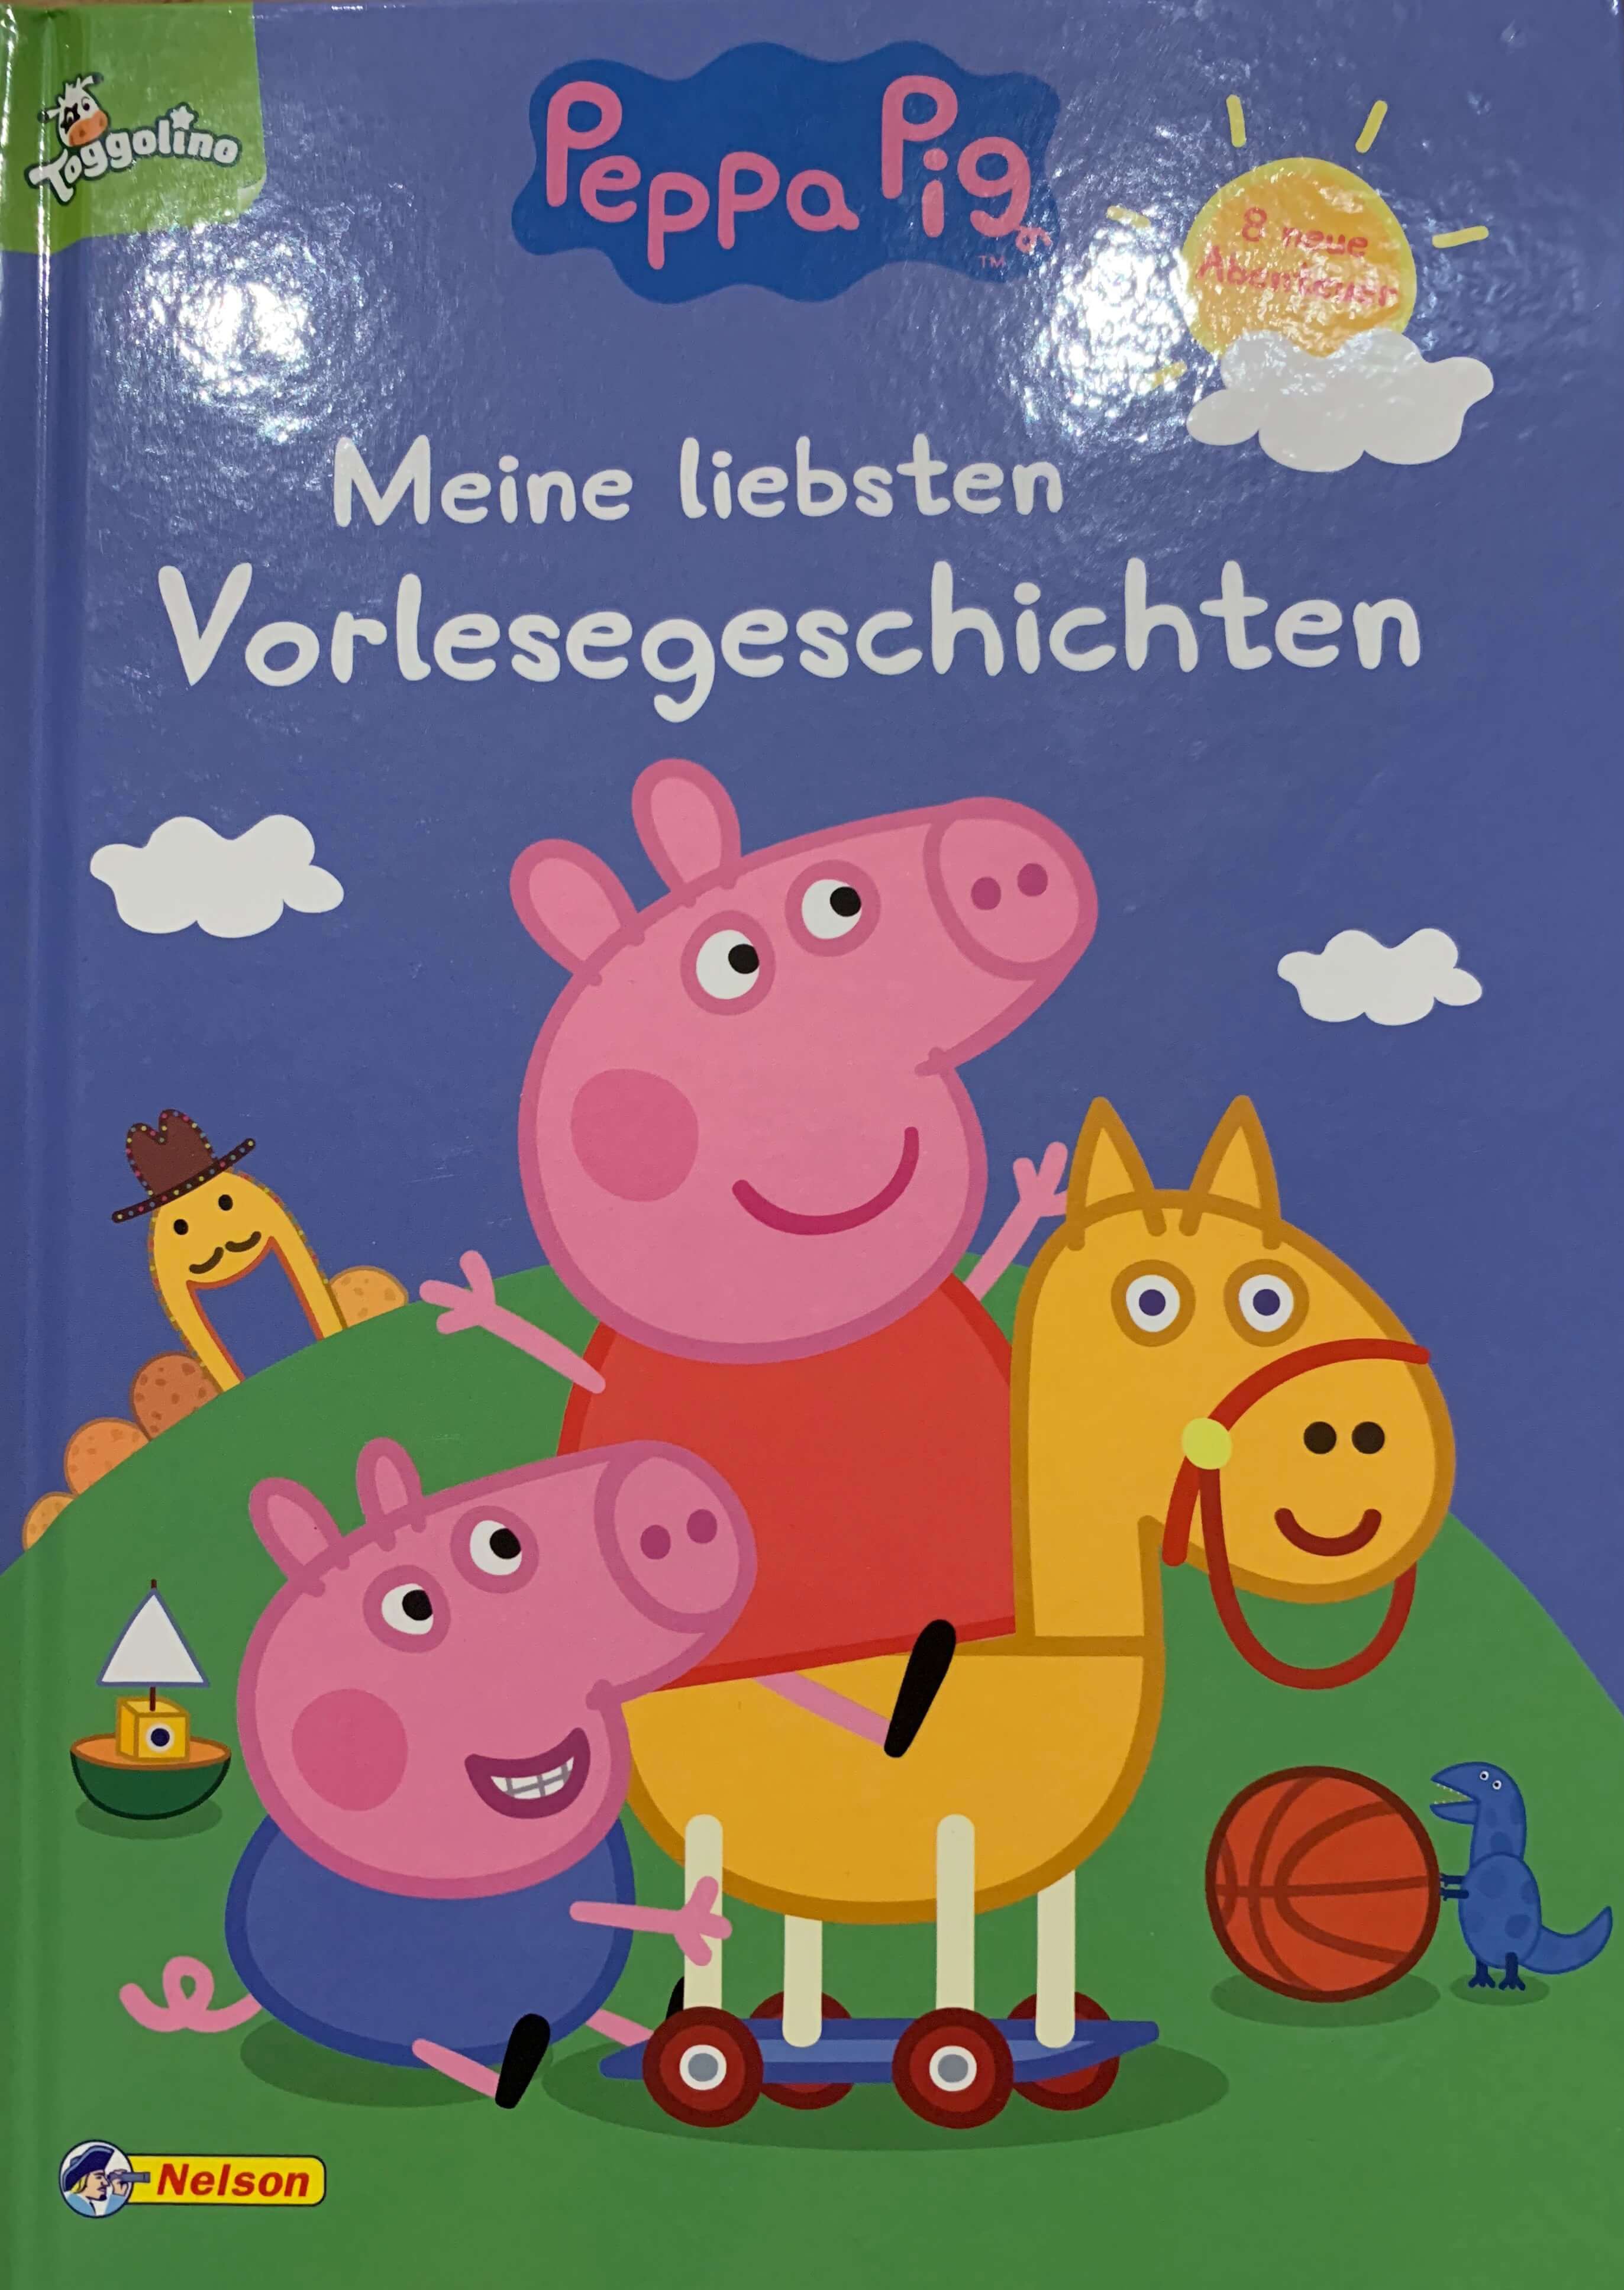 Peppa Pig- Meine liebsten Vorlesegeschichten